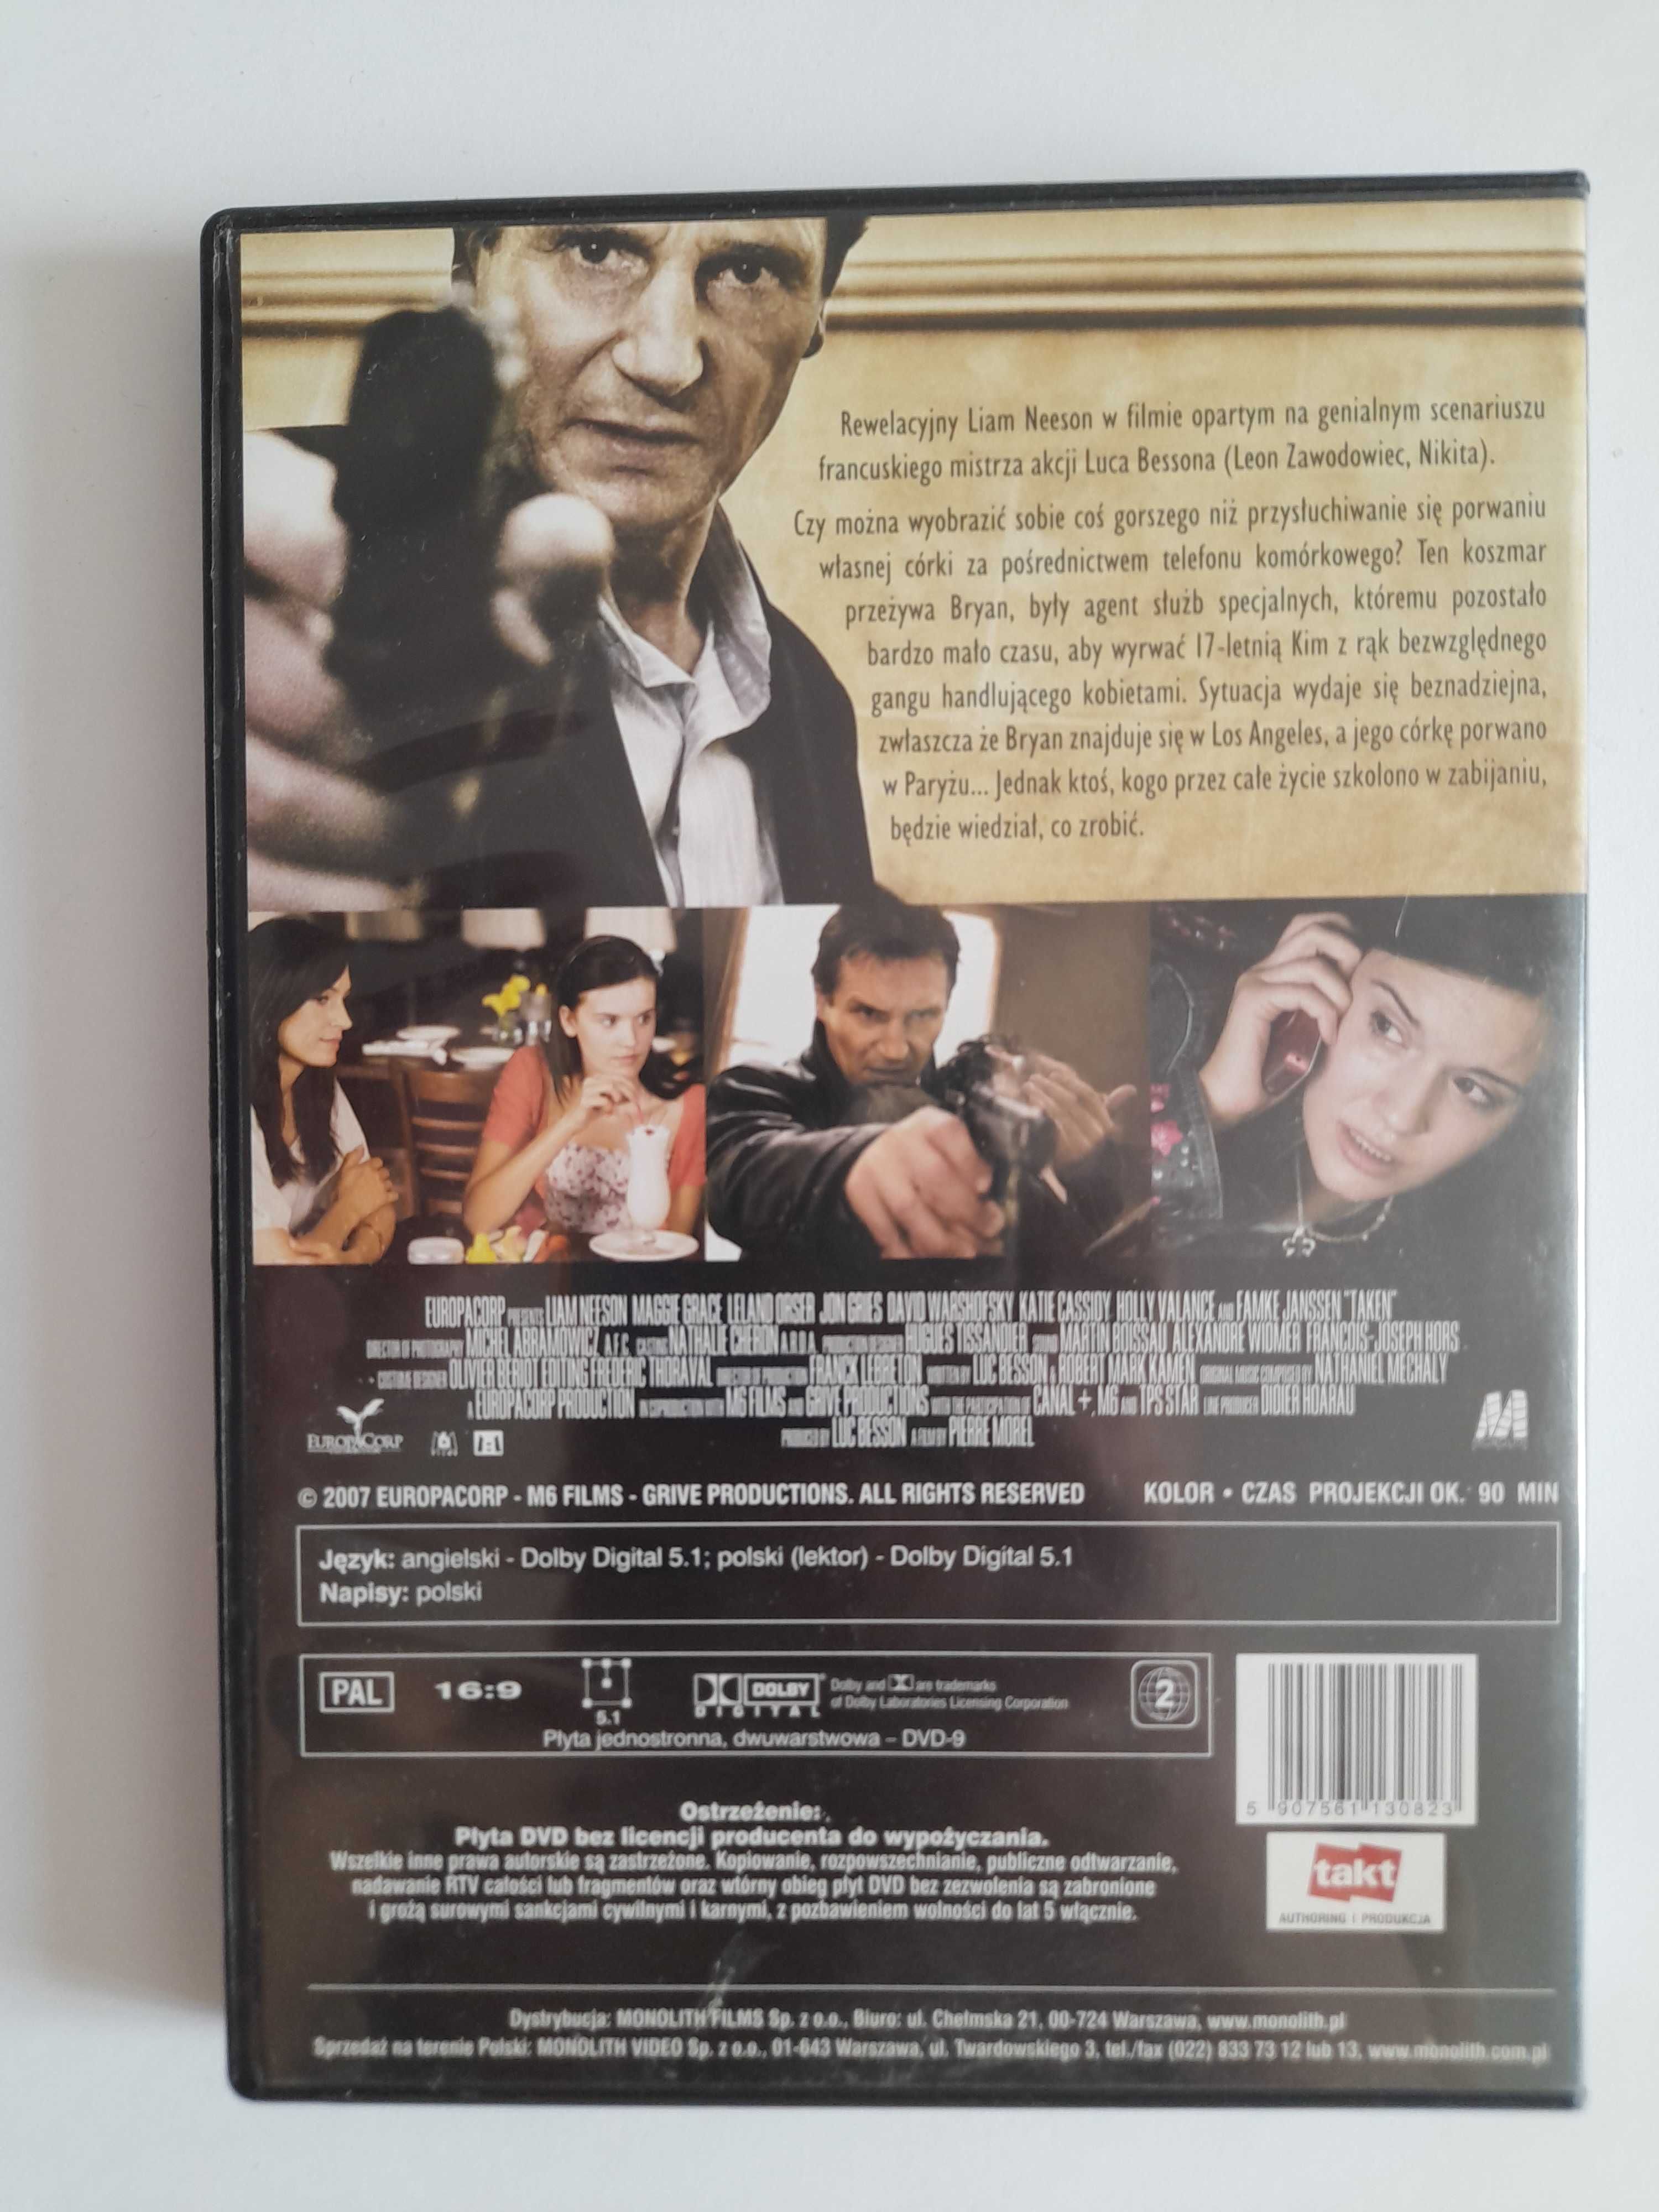 Film Uprowadzona DVD